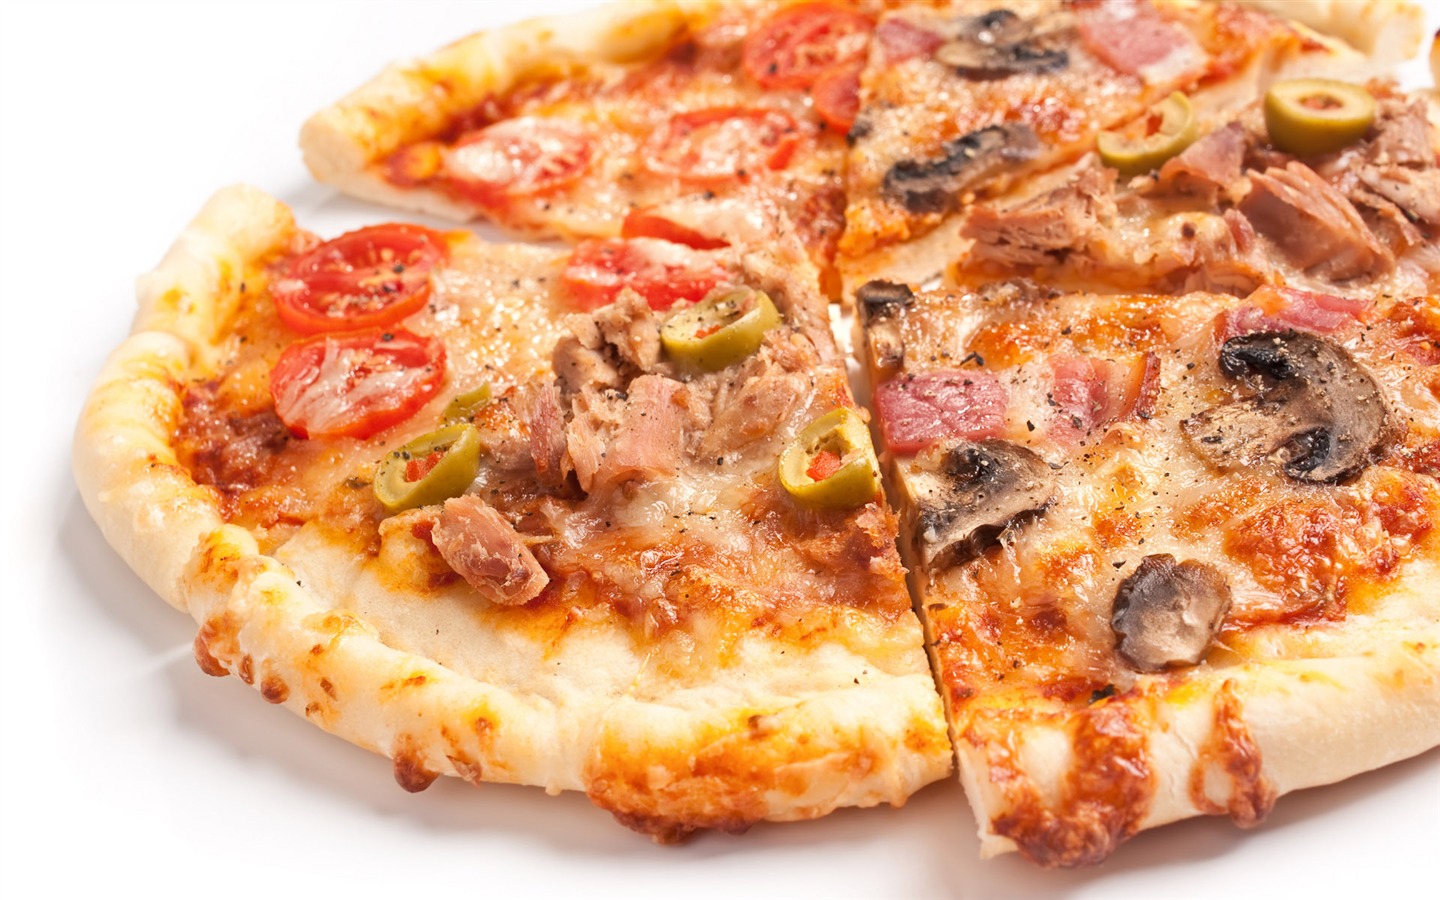 Fondos de pizzerías de Alimentos (3) #8 - 1440x900